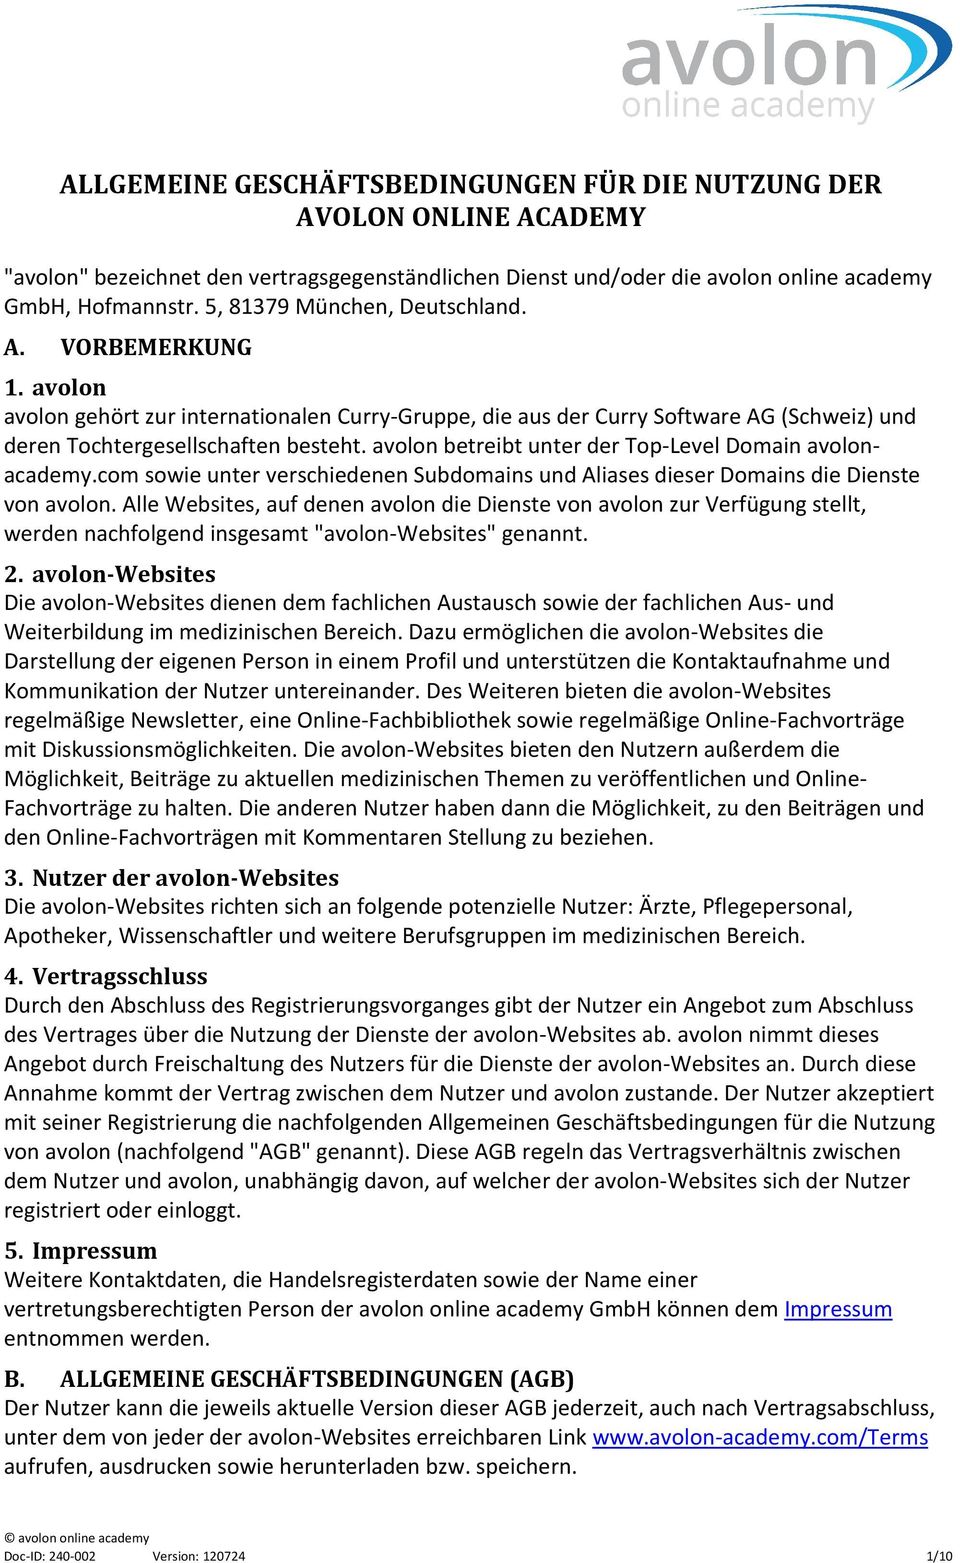 Dienst und/oder die avolon online academy GmbH, Hofmannstr. 5, 81379 München, Deutschland. A. VORBEMERKUNG 1.